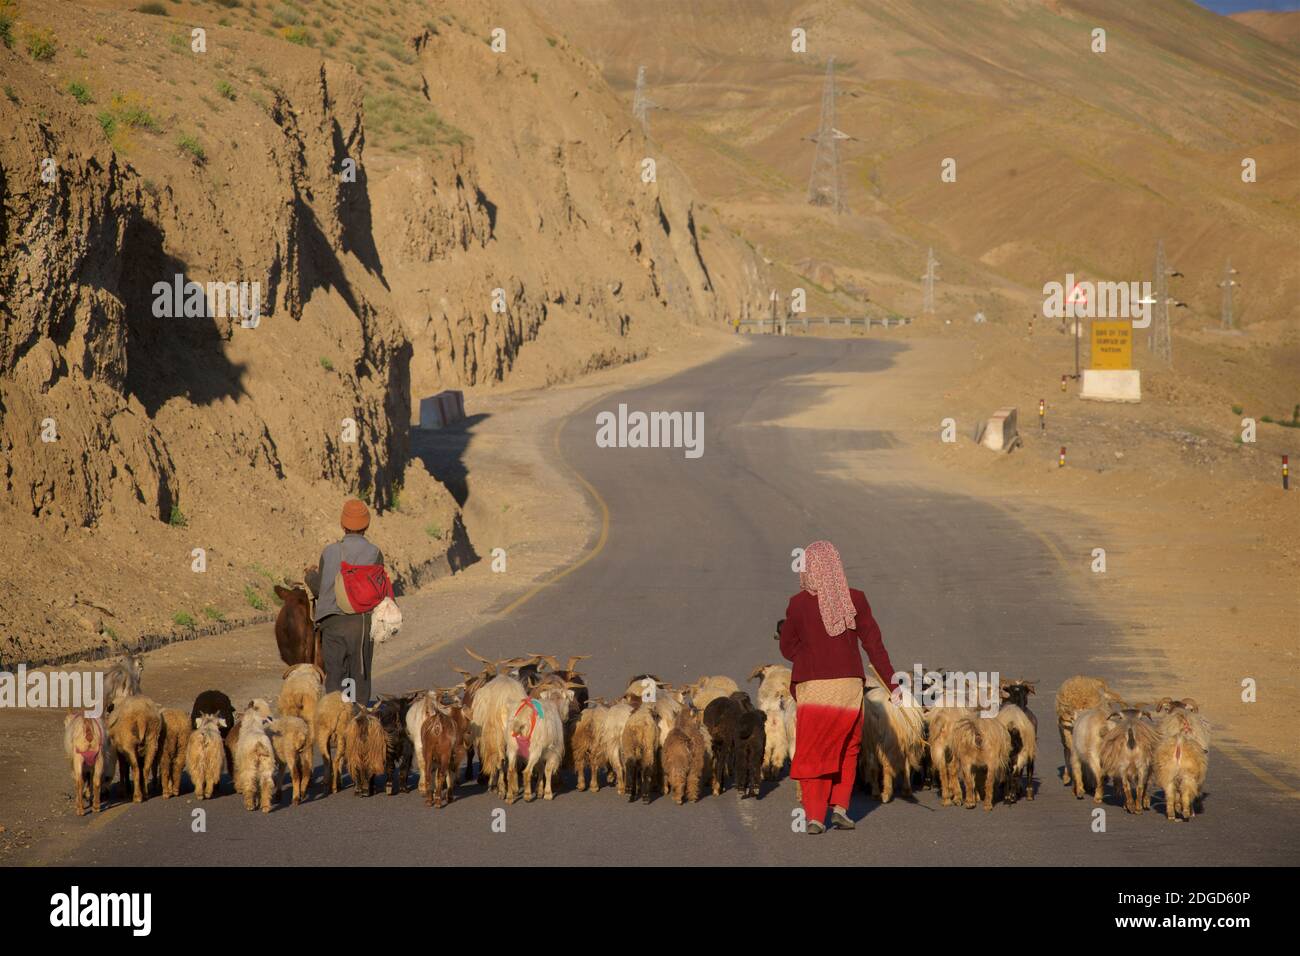 Ein gemeinsamer Anblick in Ladakh - Tiere, die entlang der Straße gehepft. Leh zu Srinagar Autobahn nahe Lamayouro, Ladakh, Jammu und Kaschmir, Indien Stockfoto